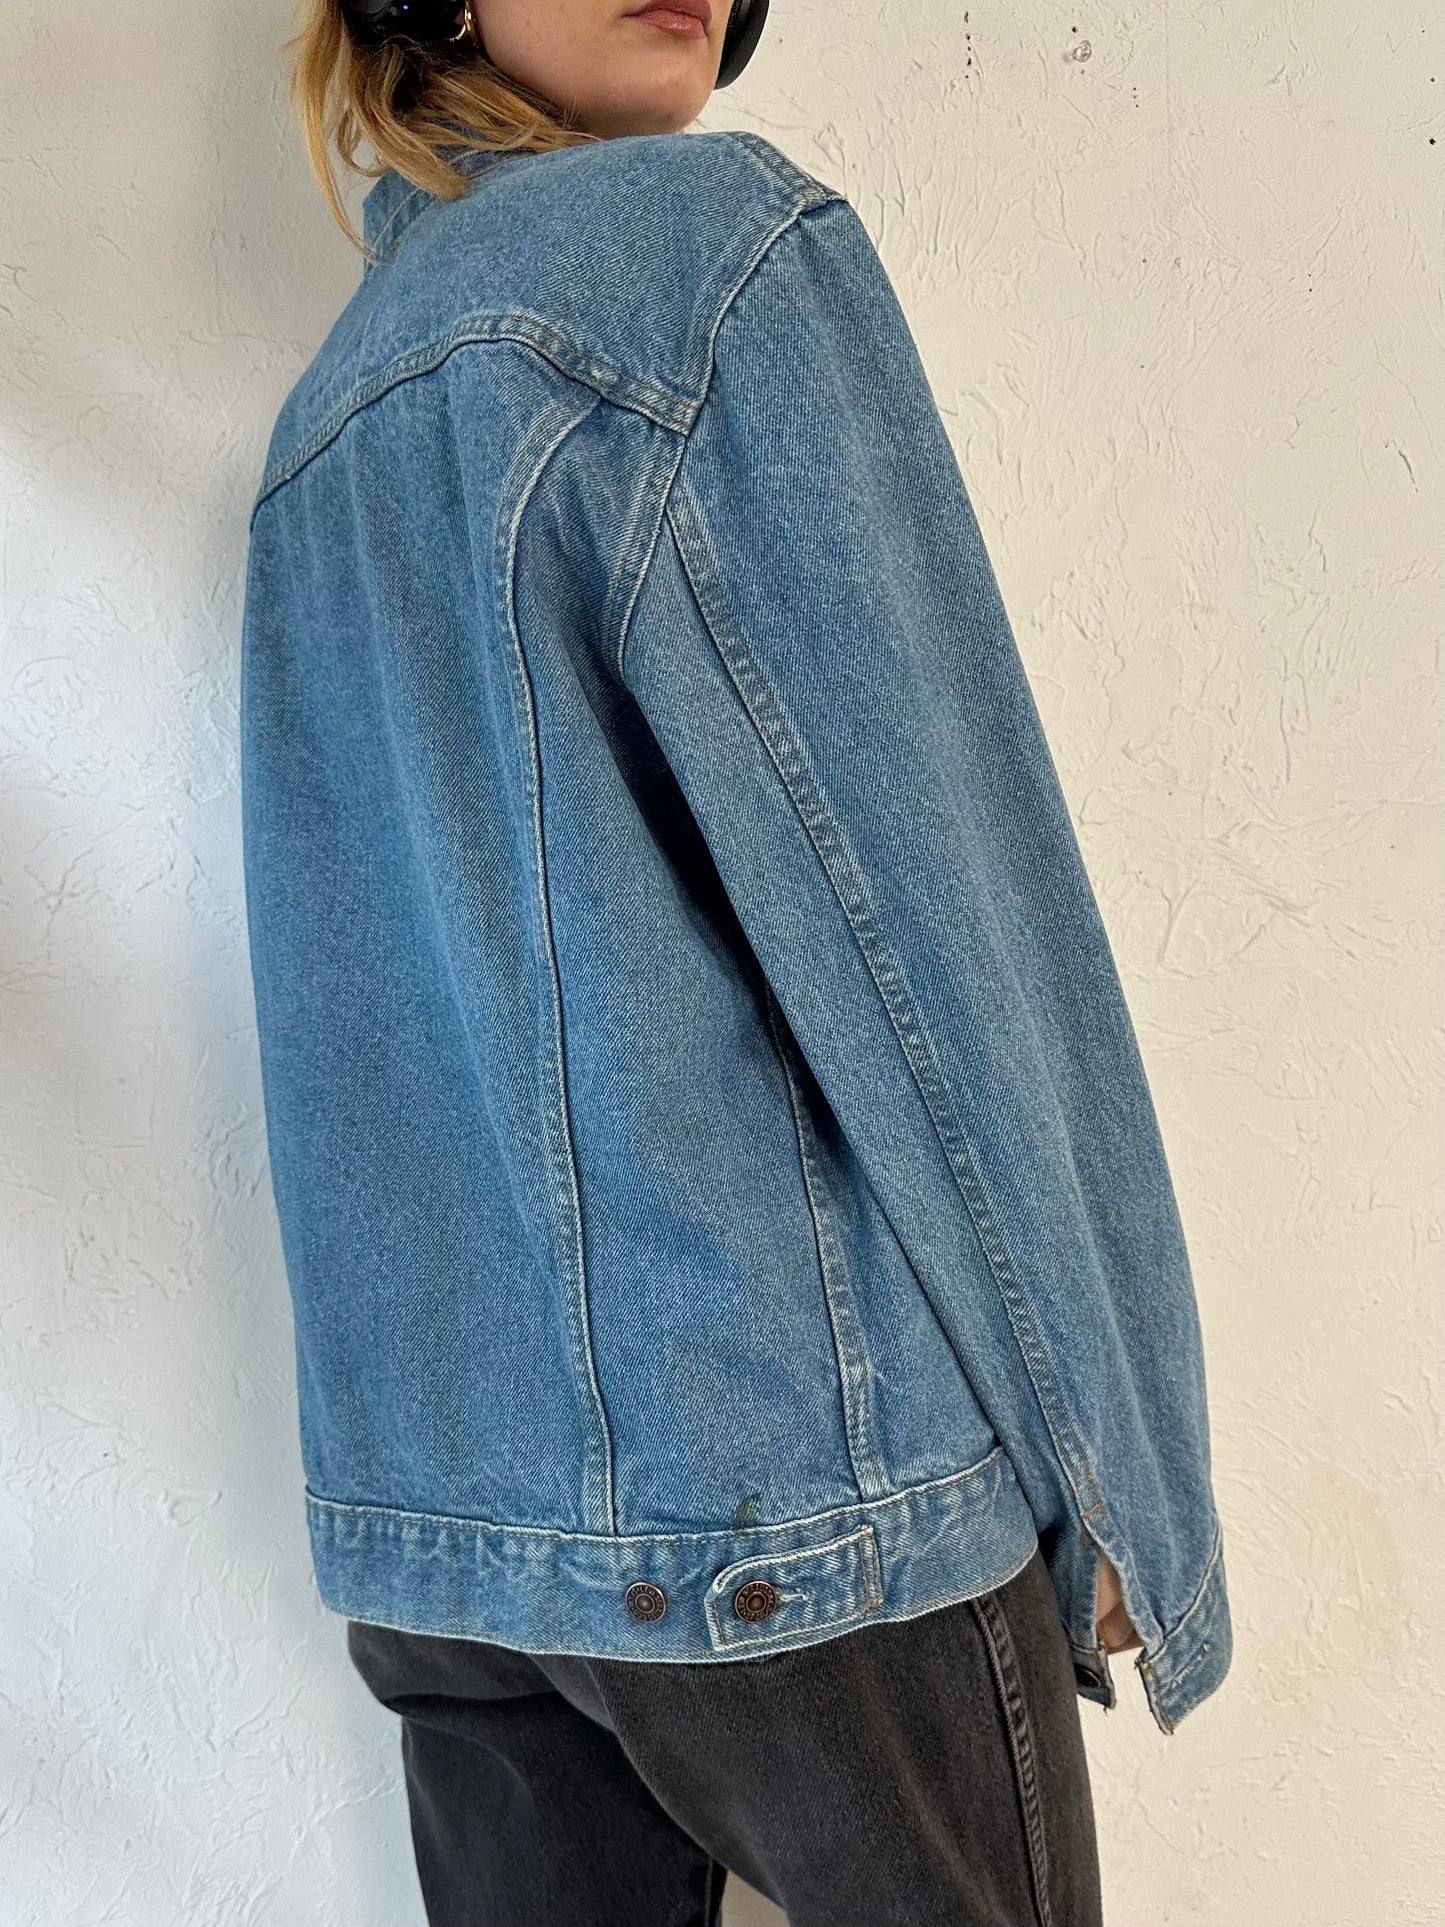 Vintage 'Levis' Denim Jacket / Large